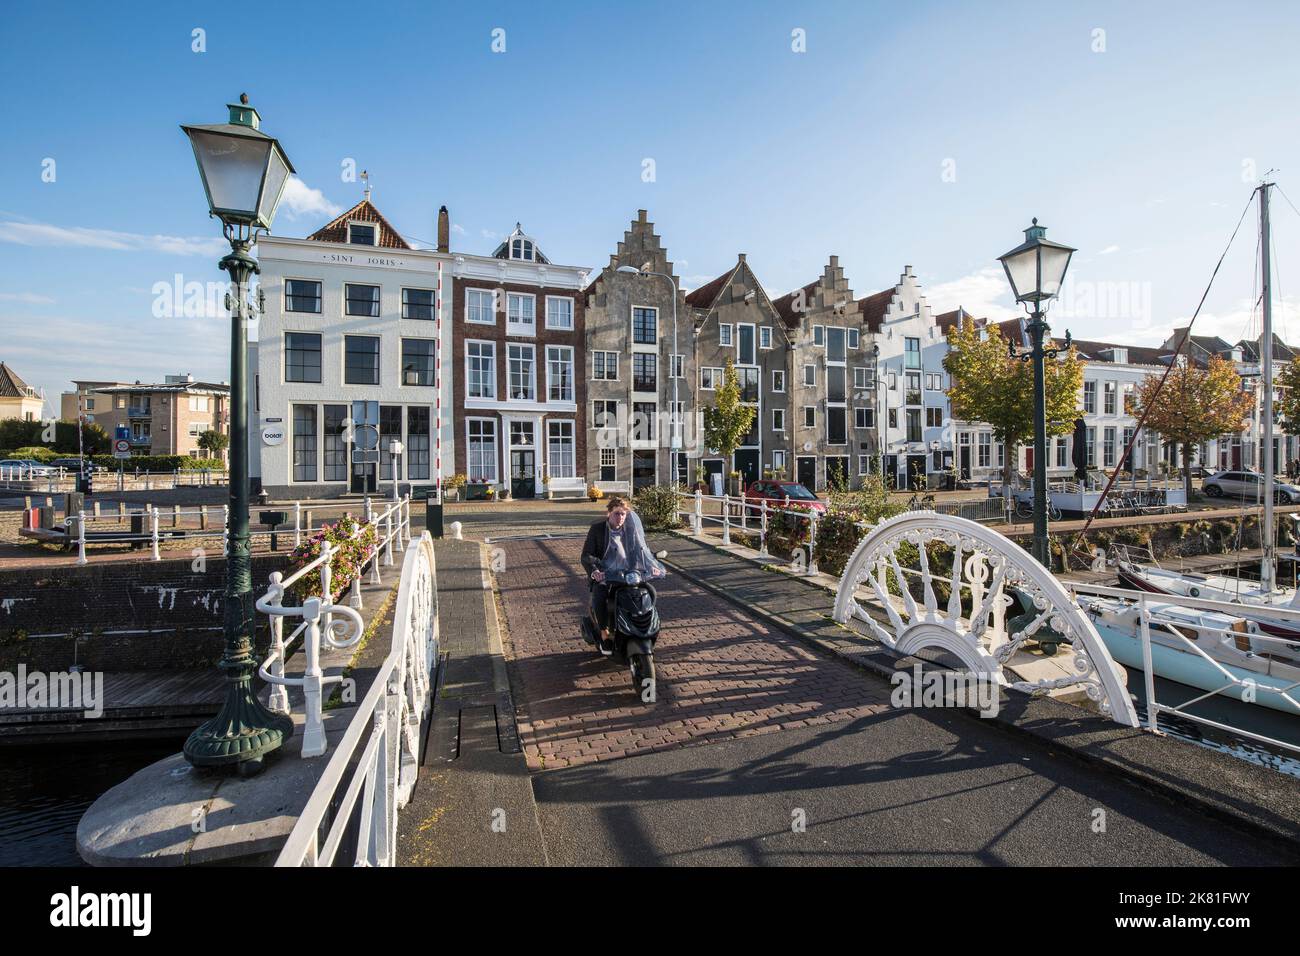 Middelburg auf der Halbinsel Walcheren, die Brücke Spijkerbrug im Binnenhafen und Häuser auf der Straße Kinderdijk, Zeeland, Niederlande. Middelbur Stockfoto